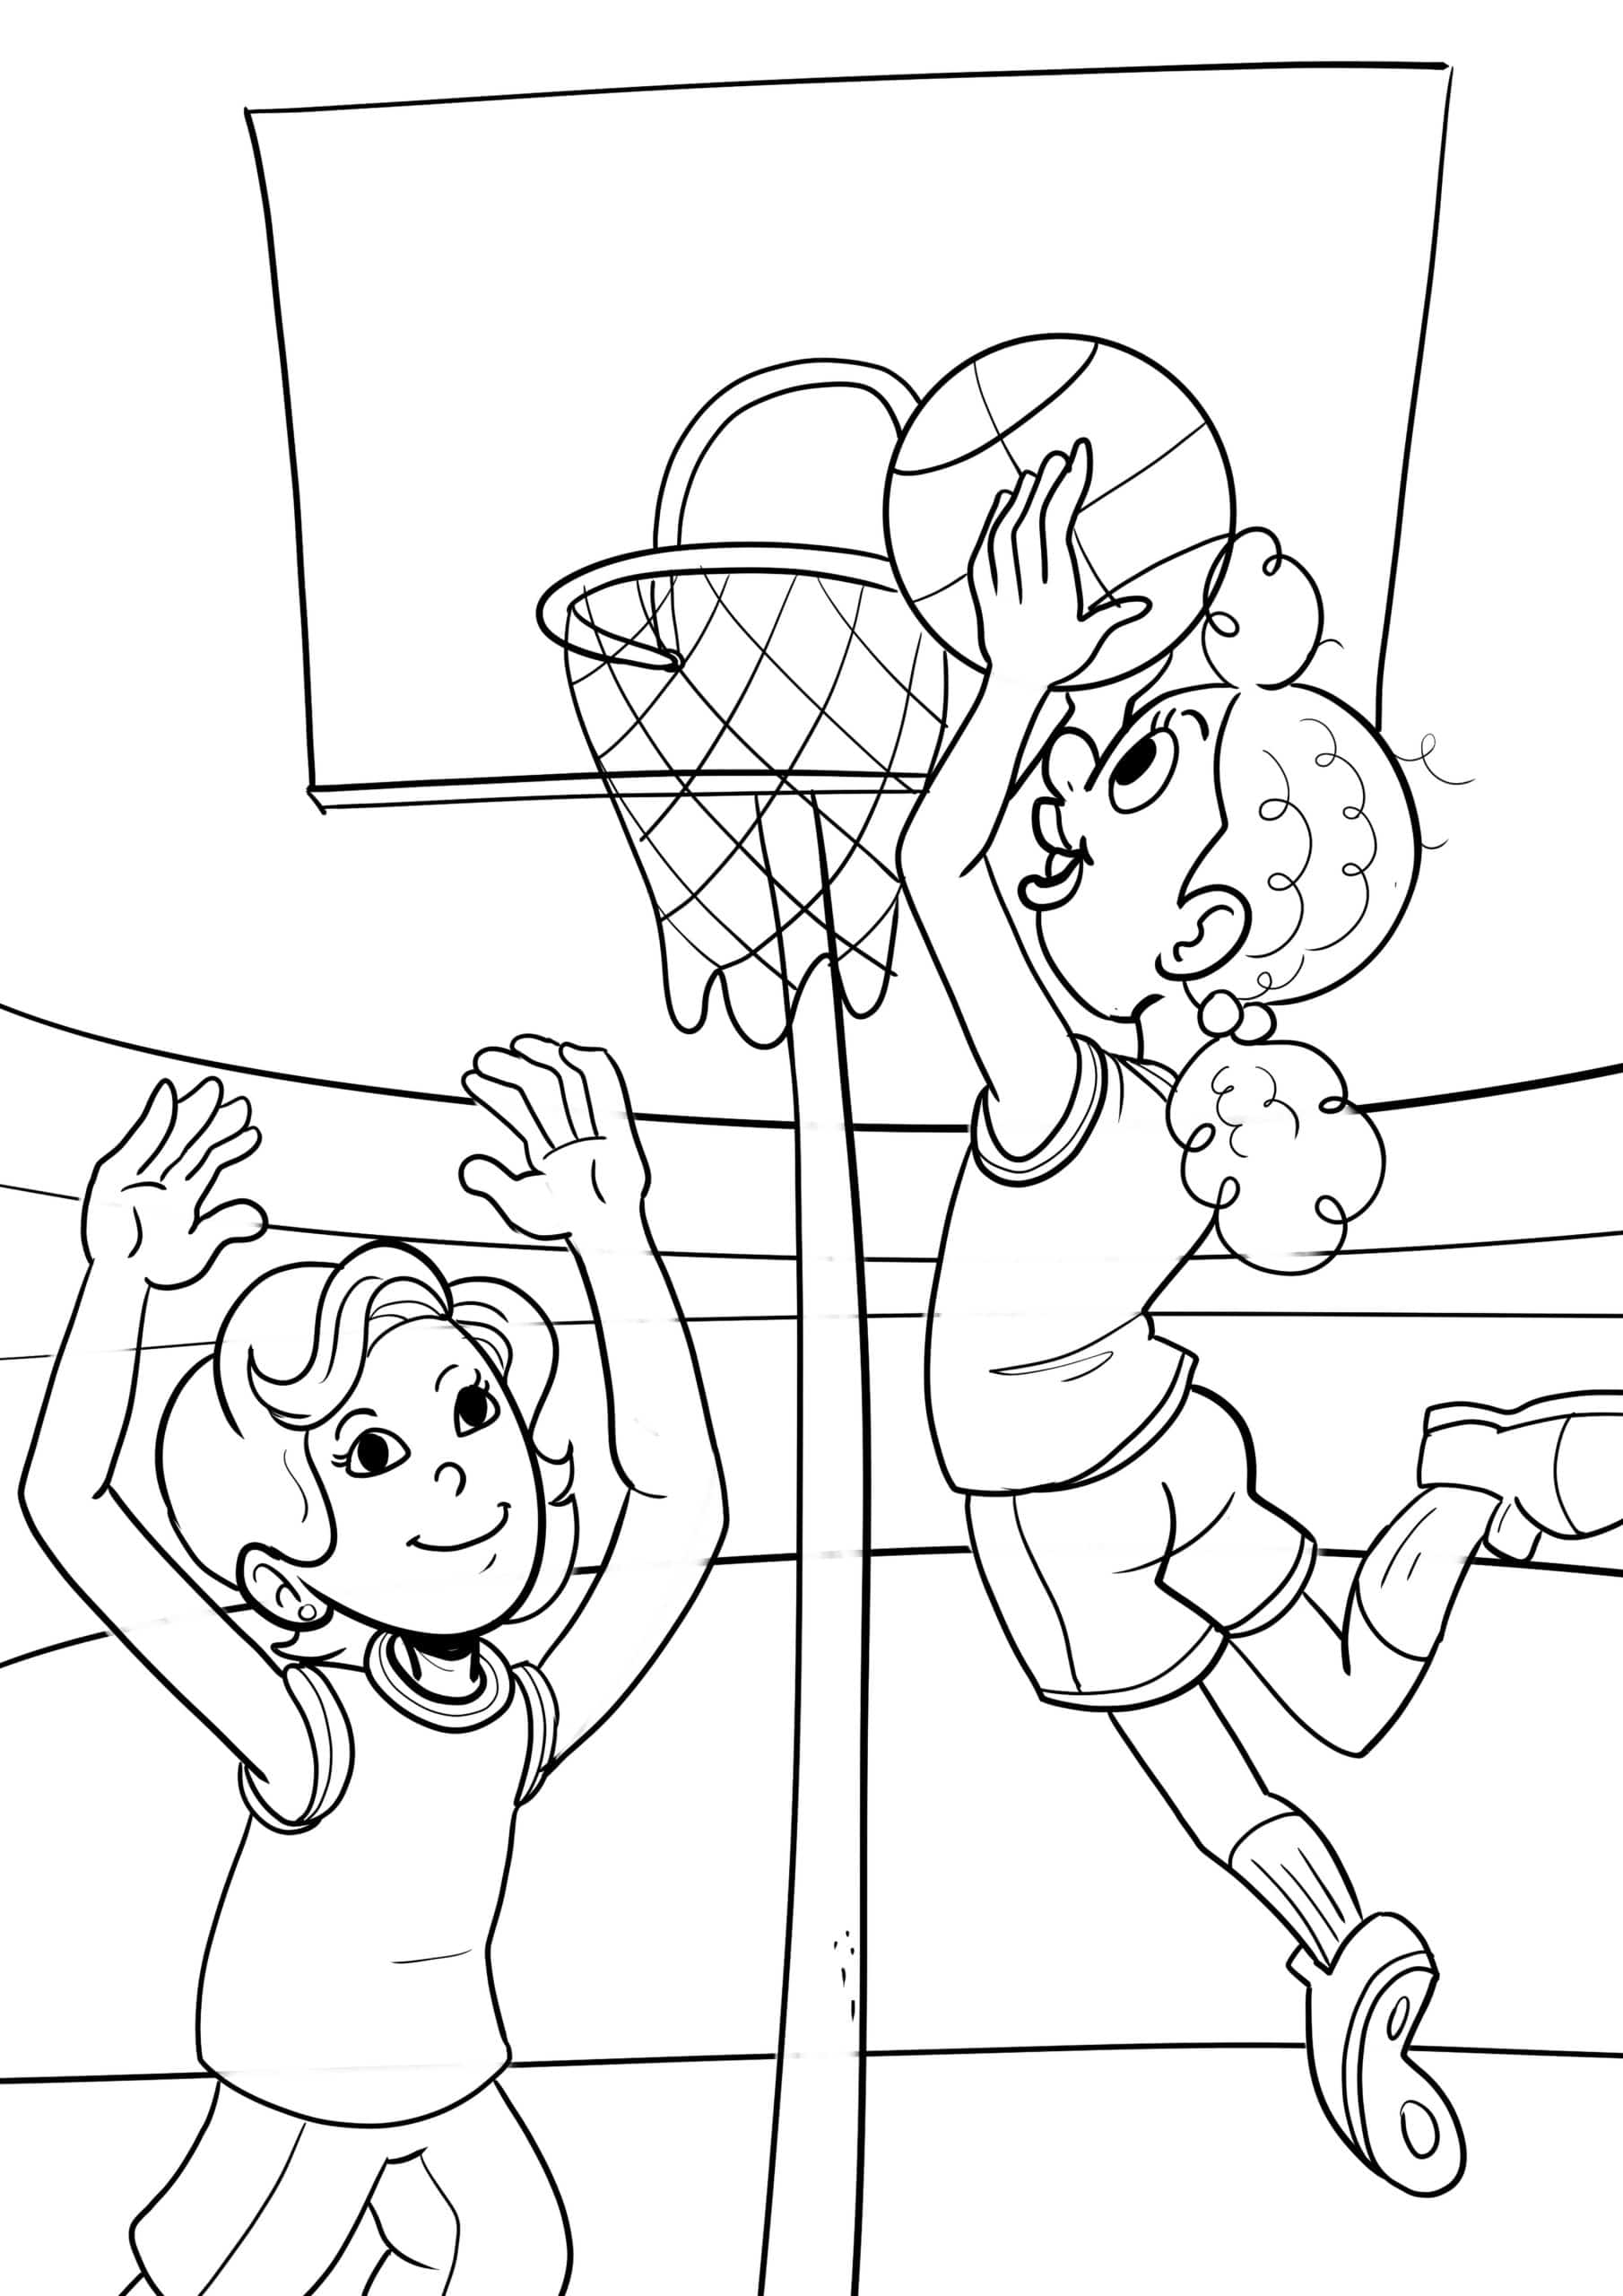 דף צביעה ילדים משחקים בכדורסל לצביעה